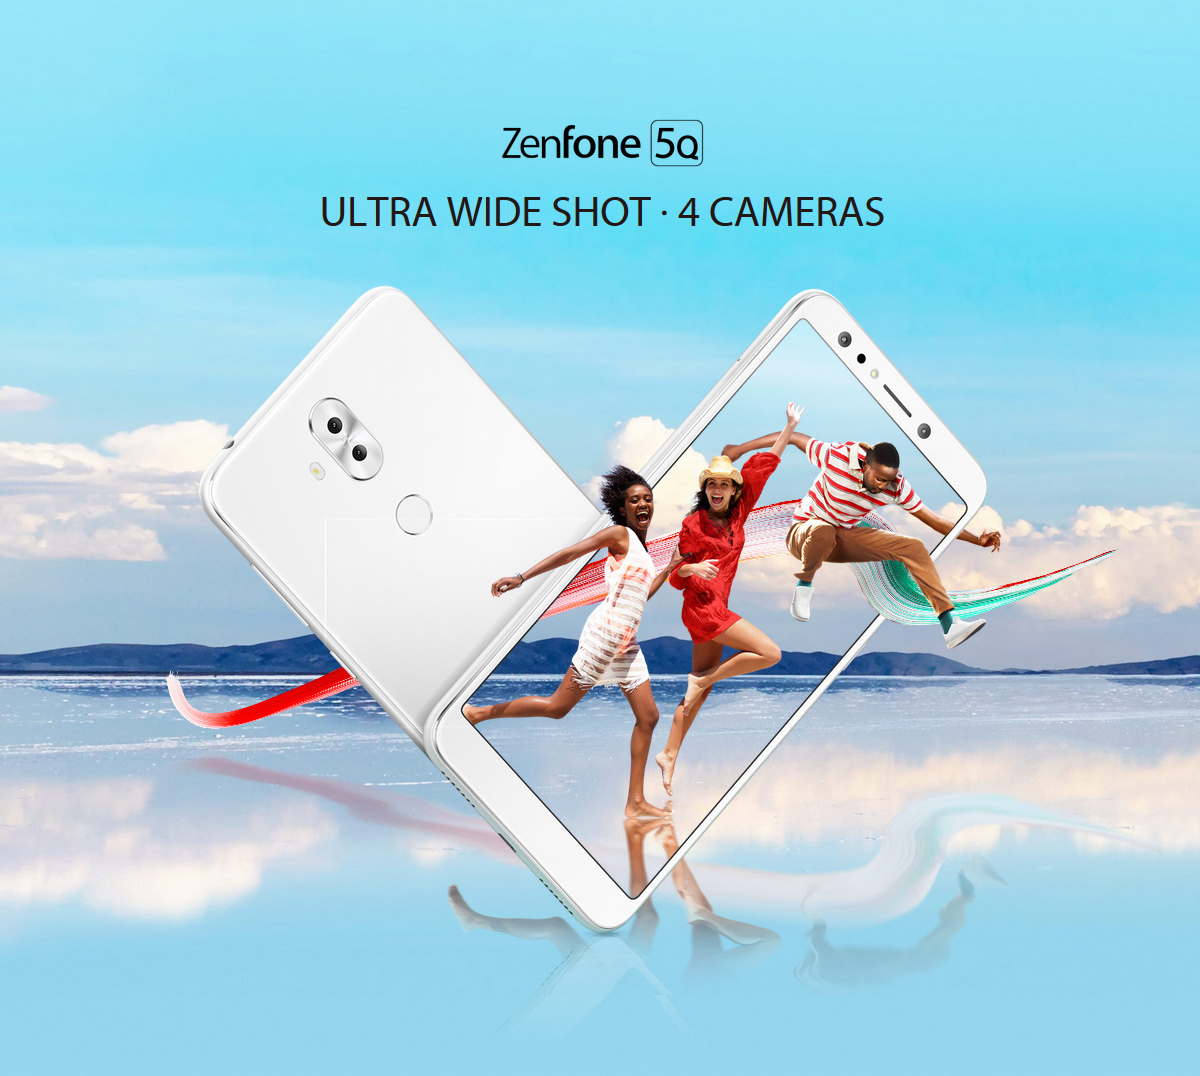 ZenFone 5Q